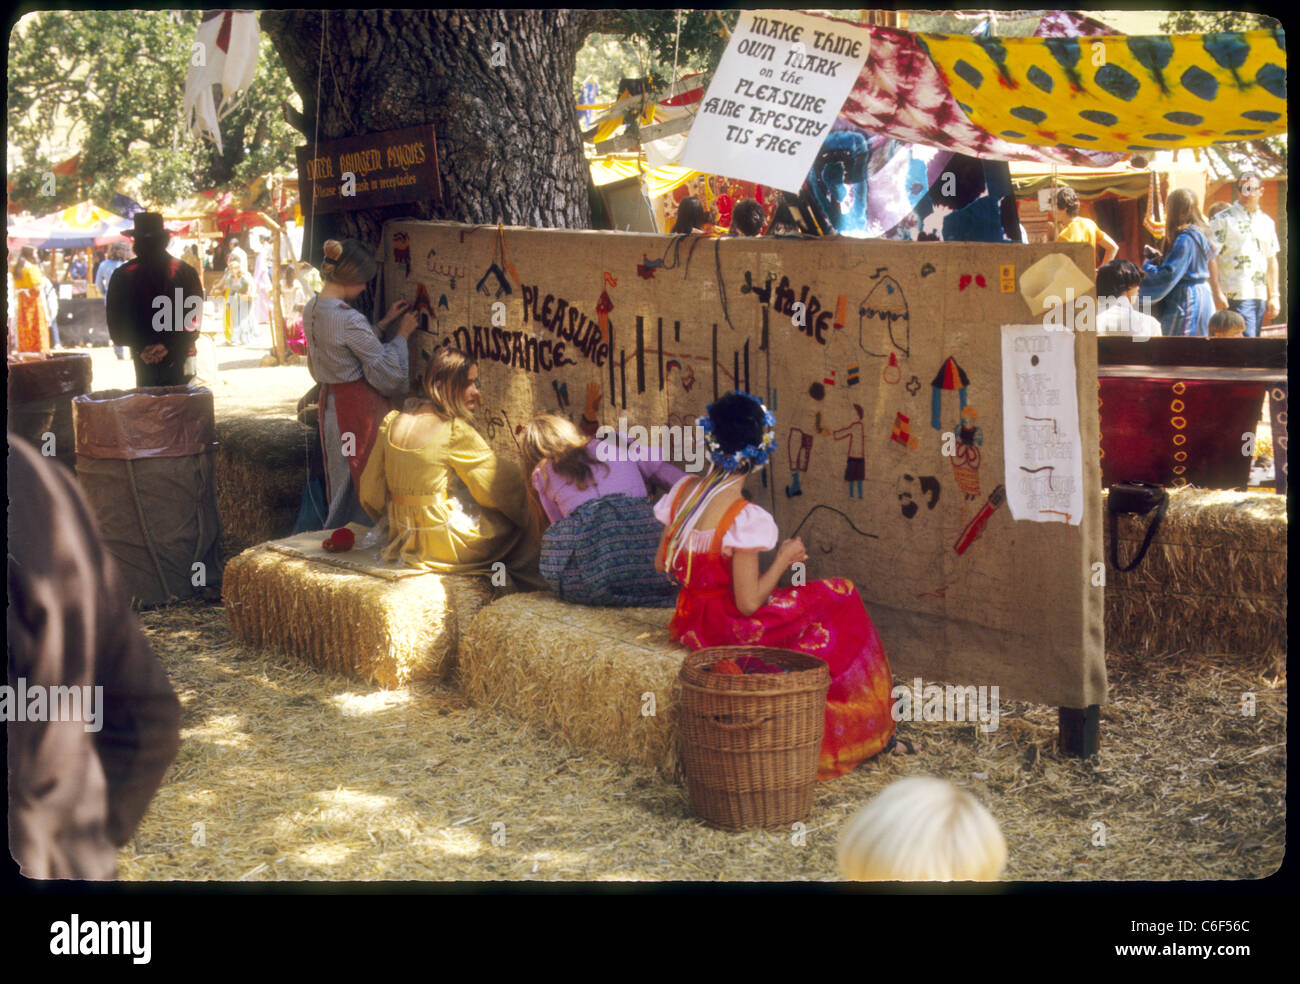 Tapete Kunst Renaissance Vergnügen Faire Southern California Hippies der 1970er Jahre Stockfoto